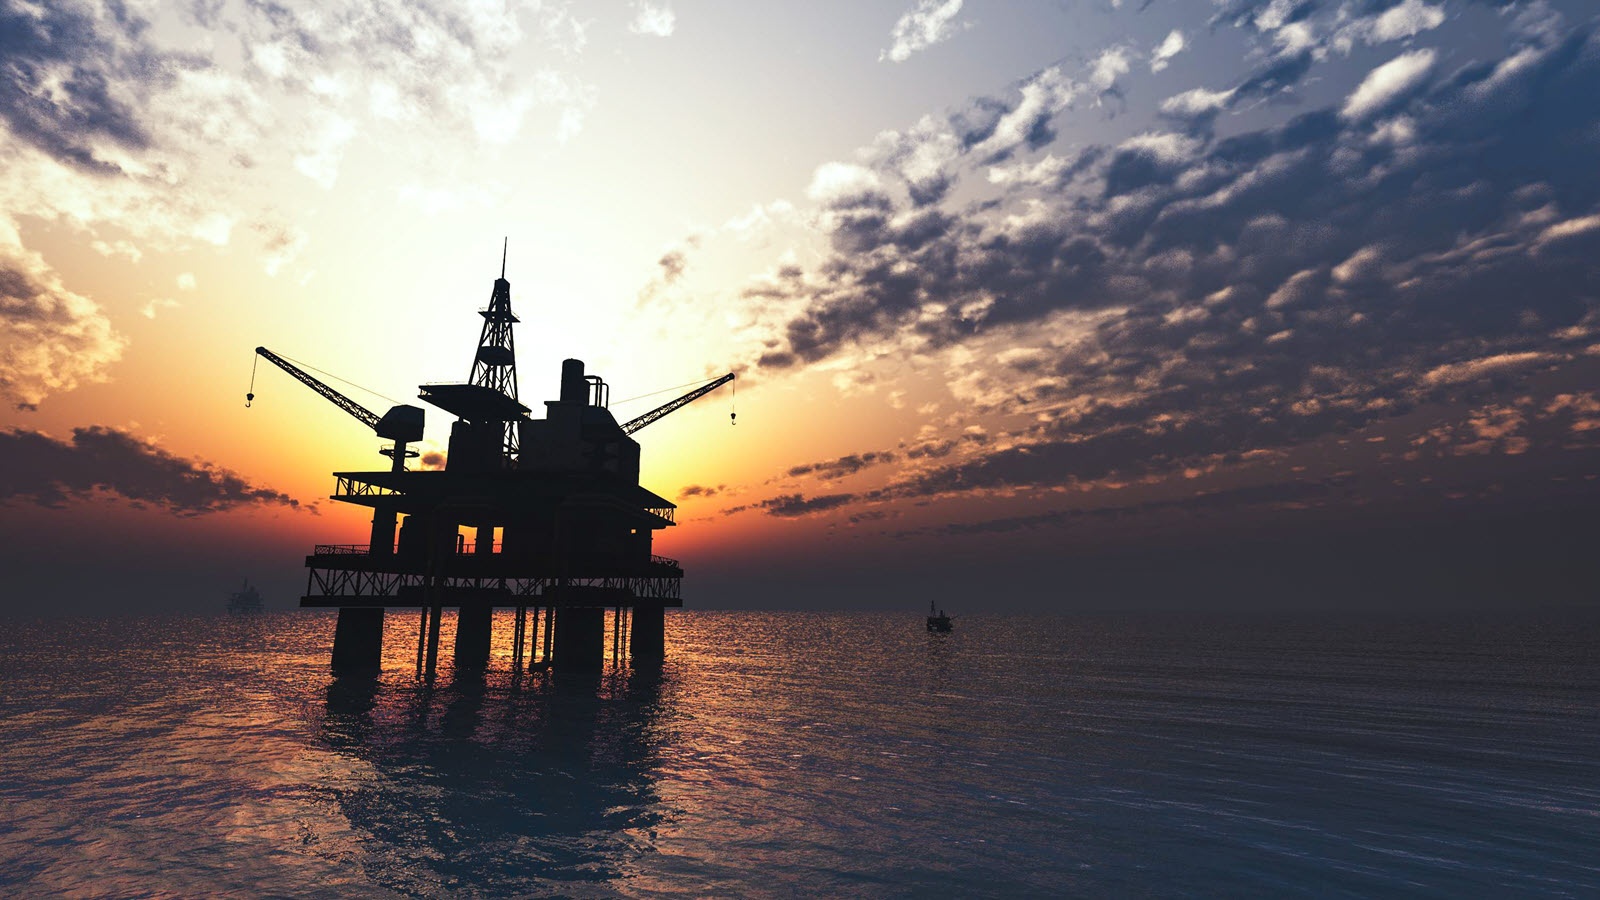 oil-drill-rig-platform-on-the-sea-sunrise